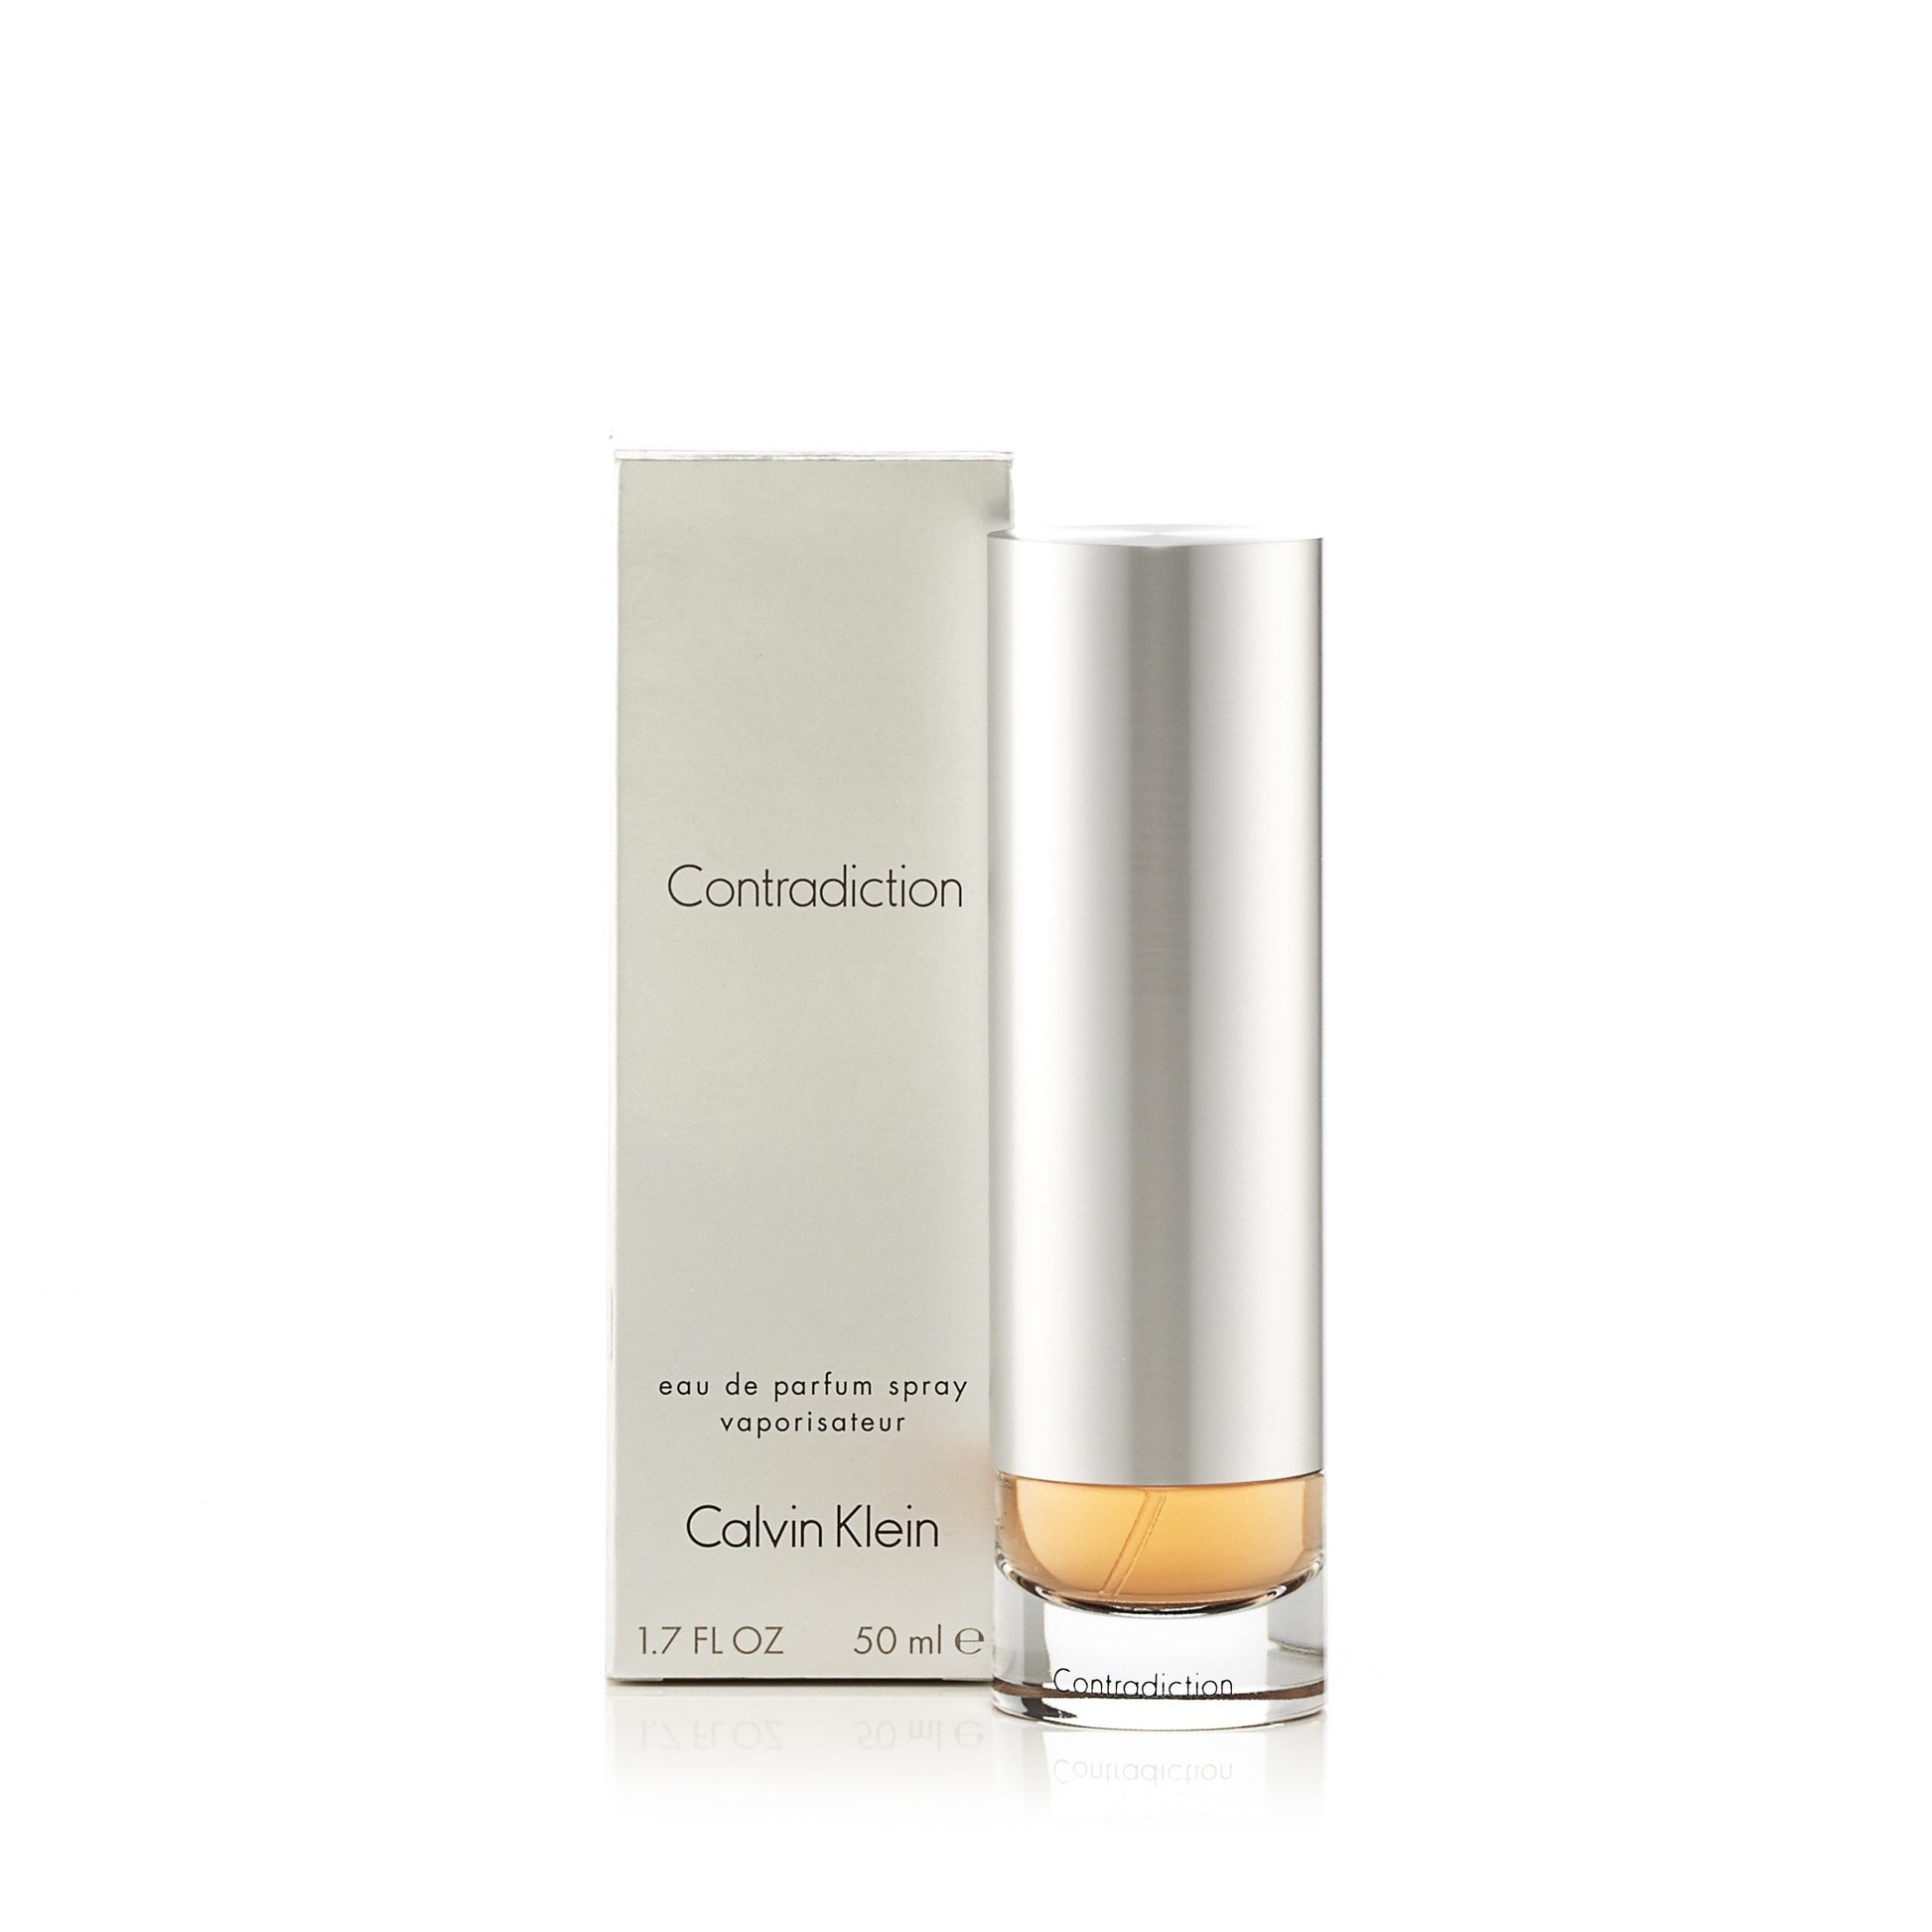 Contradiction Eau de Parfum Spray for Women by Calvin Klein 1.7 oz. Click to open in modal